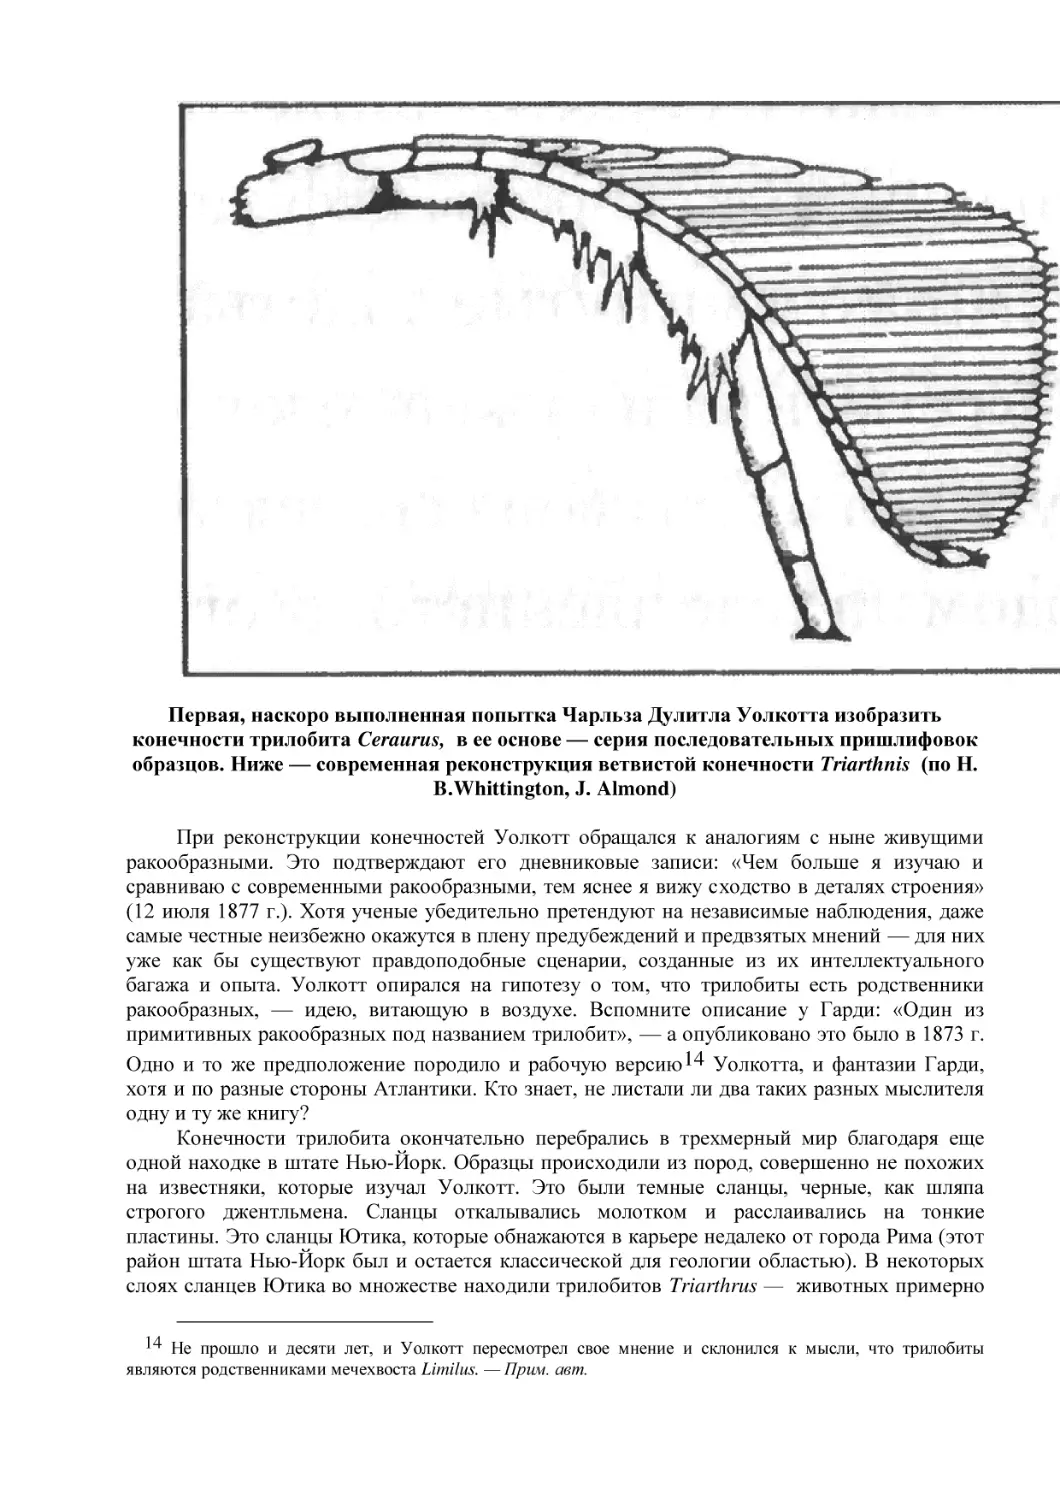 Первая, наскоро выполненная попытка Чарльза Дулитла Уолкотта изобразить конечности трилобита Ceraurus,  в ее основе — серия последовательных пришлифовок образцов. Ниже — современная реконструкция ветвистой конечности Triarthnis  (по Н. B.Whittington, ...